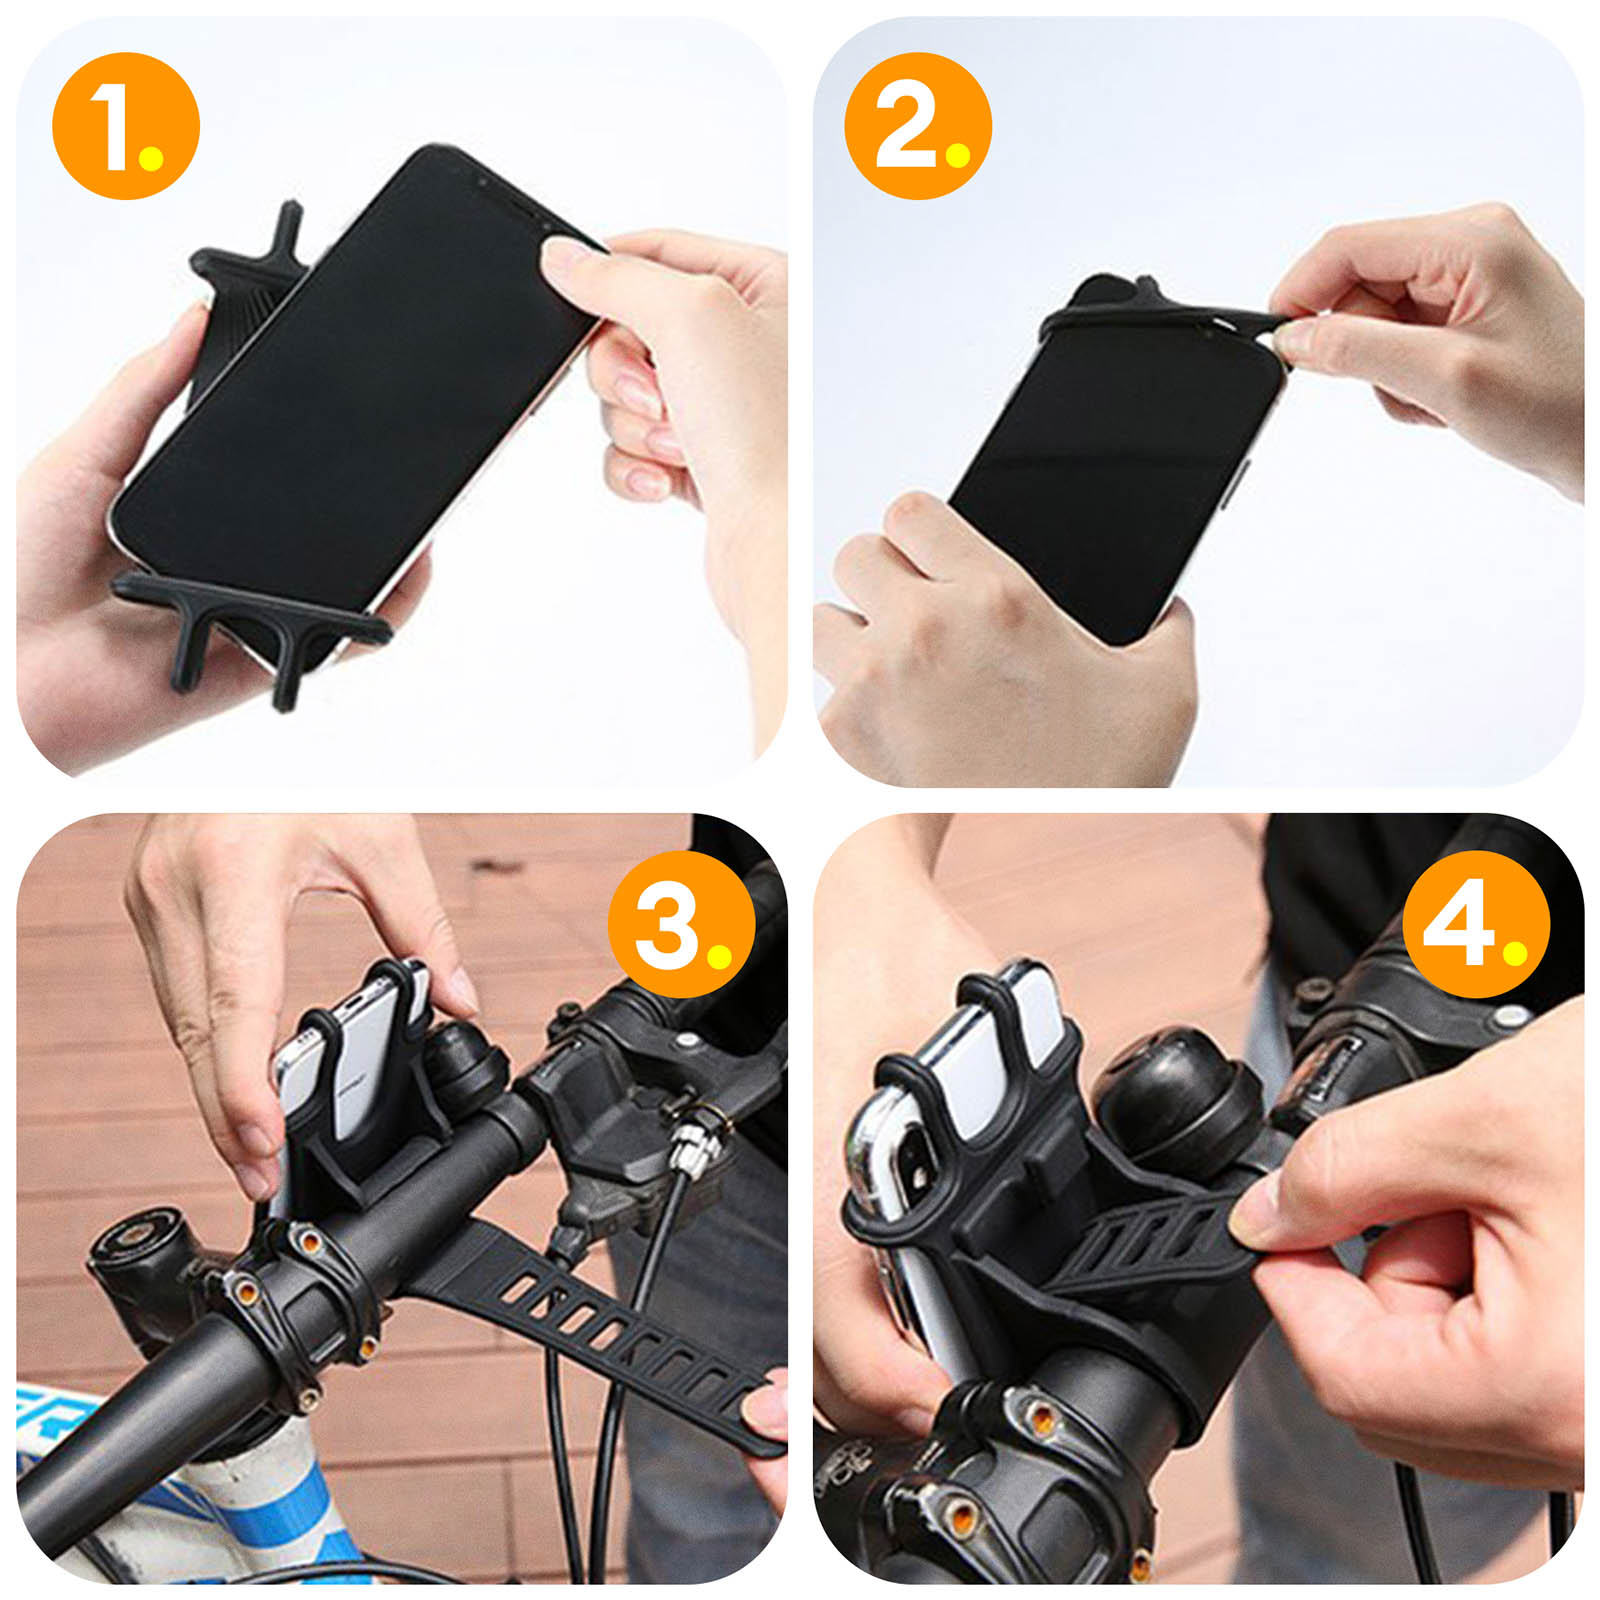 Soporte para Smartphone para bicicleta, expandible y giratorio 360°, soporte  para manillar, iHower H183 - negro - Spain